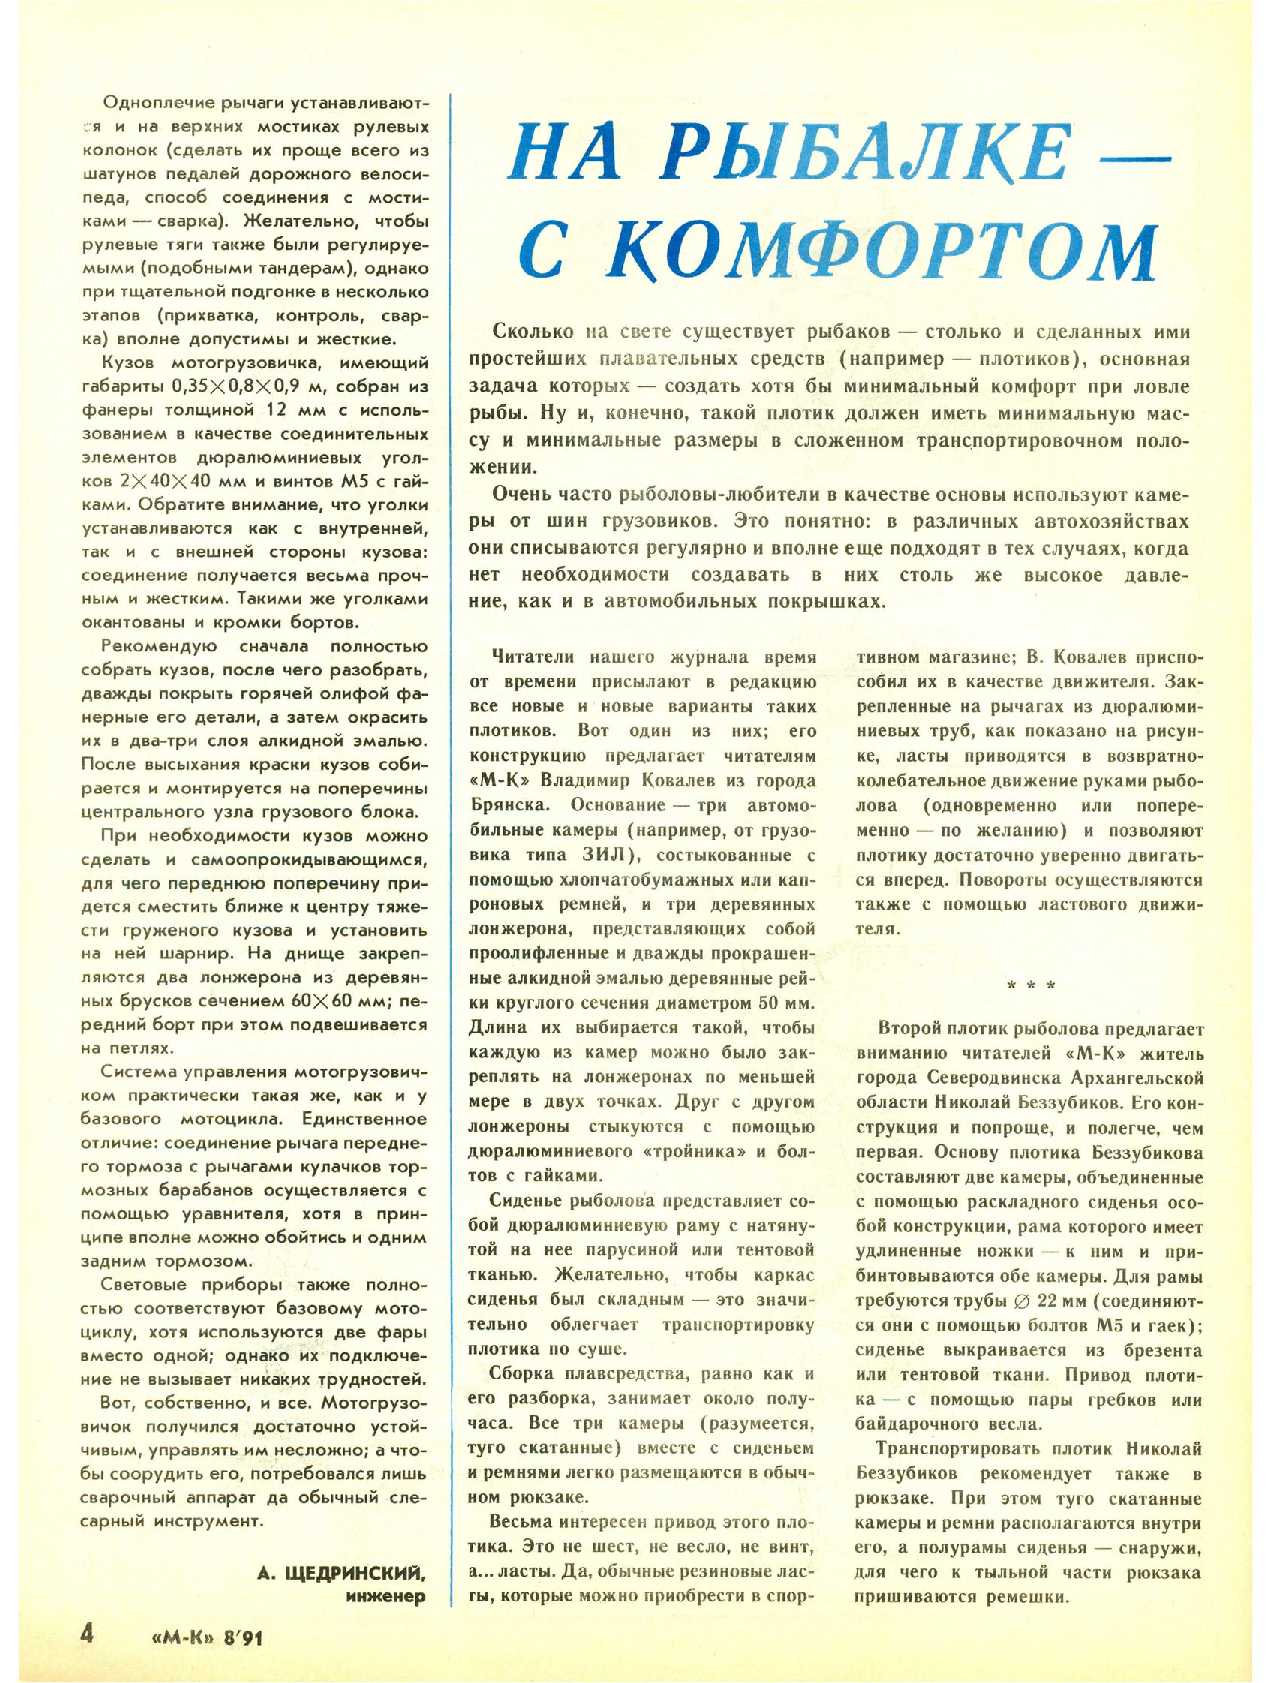 МК 8, 1991, 4 c.